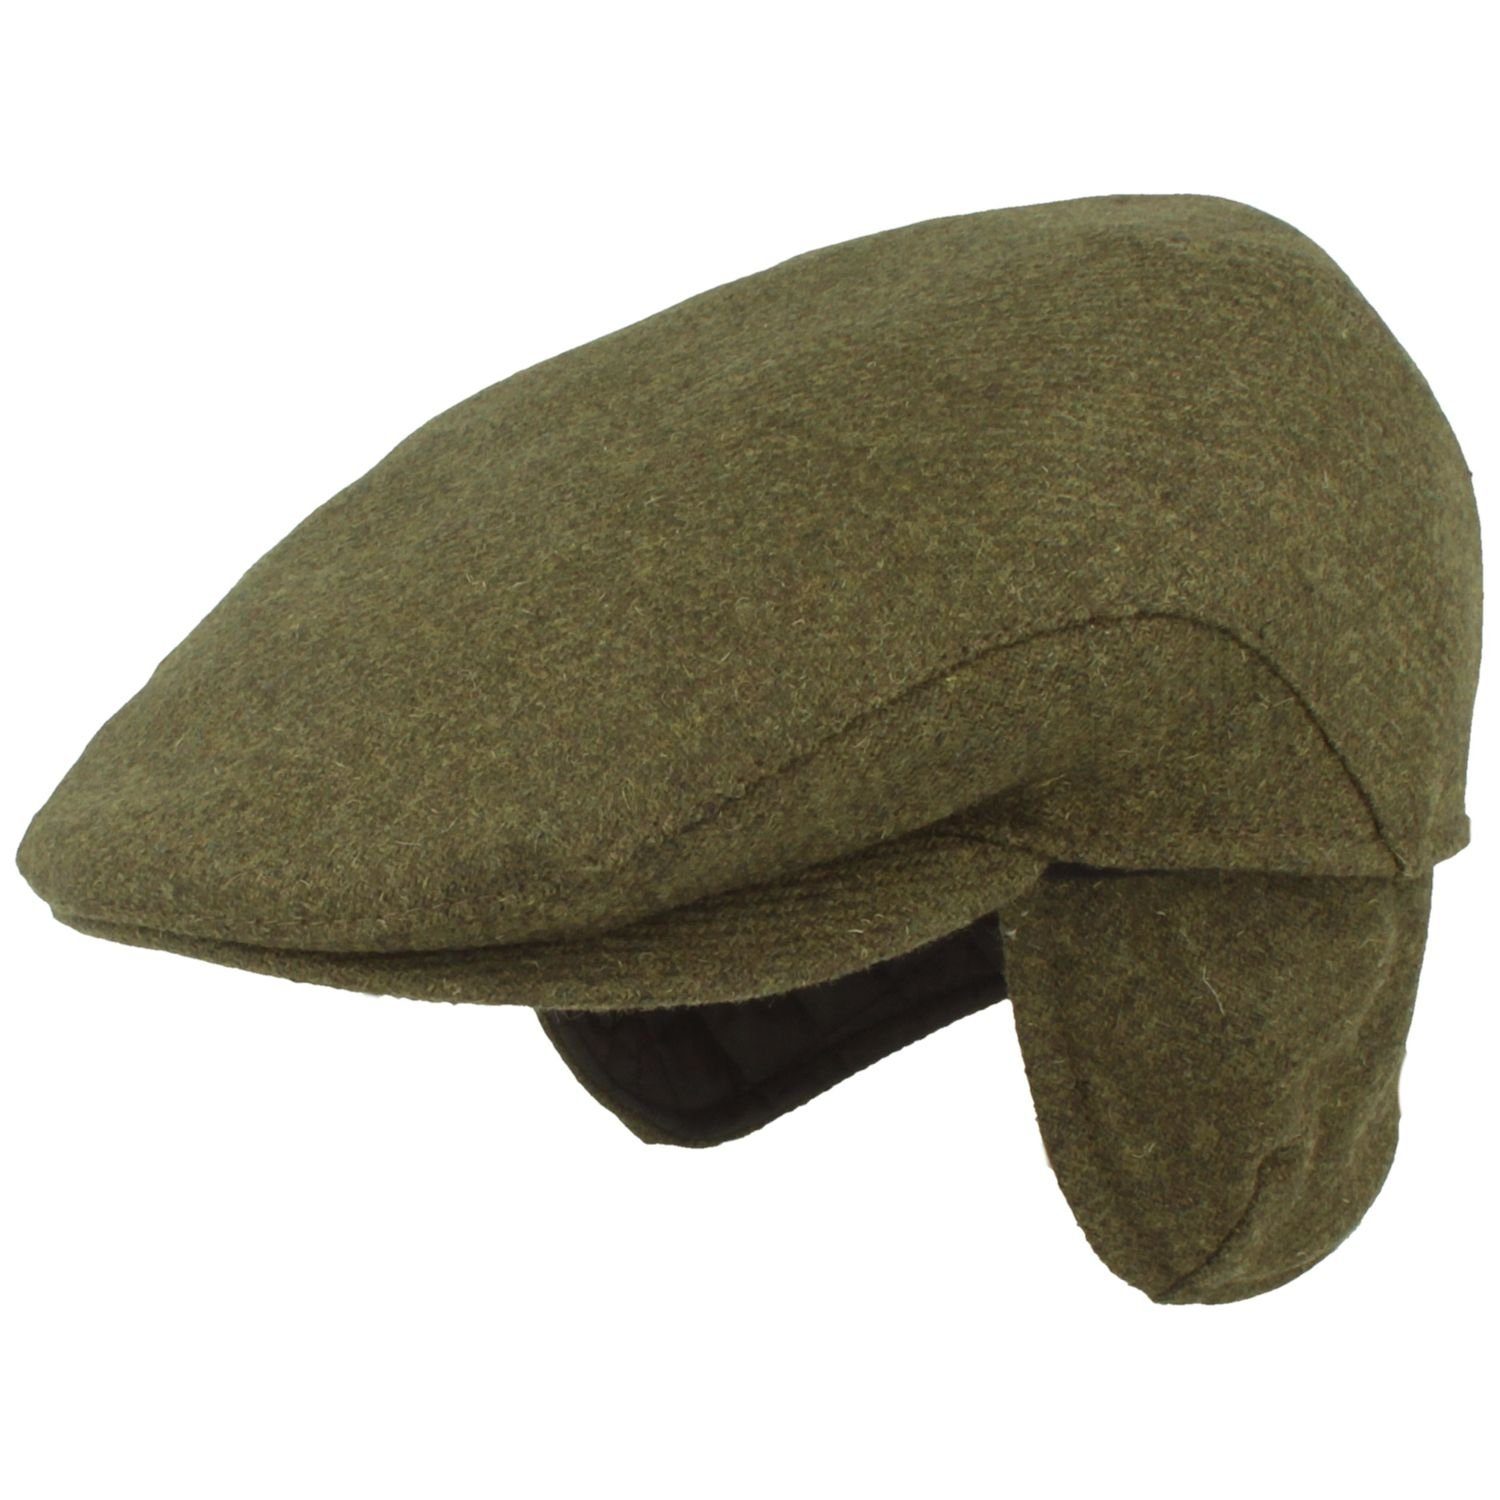 Breiter Schiebermütze Flatcap mit Ohrenklappen aus Wolle oliv 35.13.1.021